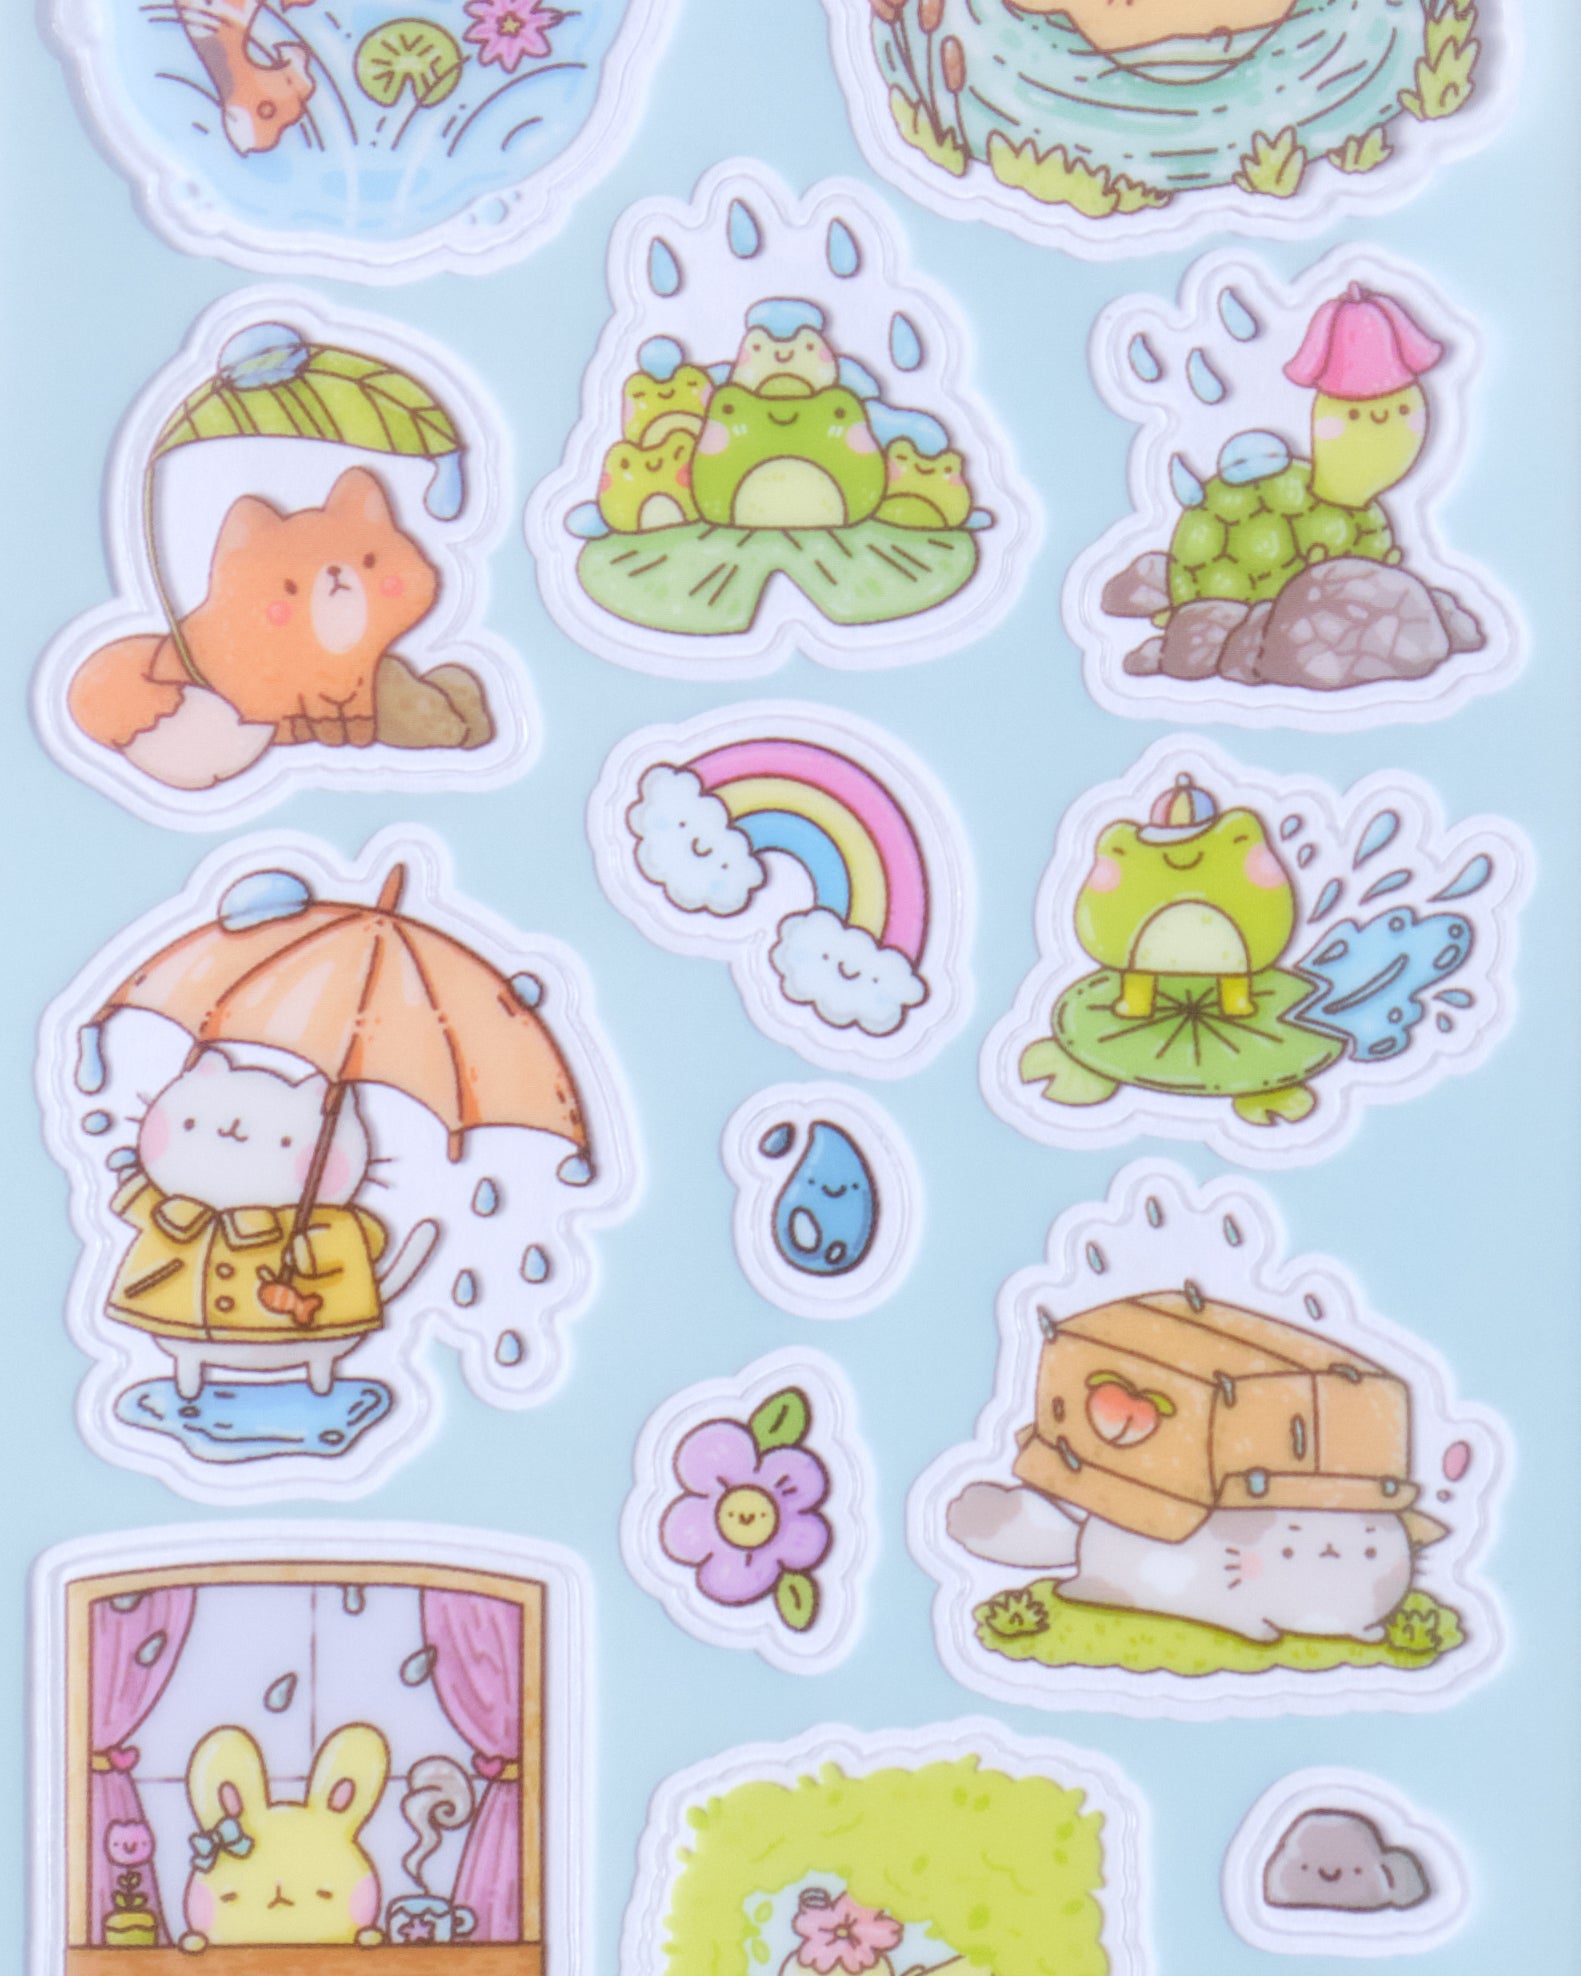 Rainy Days V Lyrics Sticker for Sale by NikitaSD